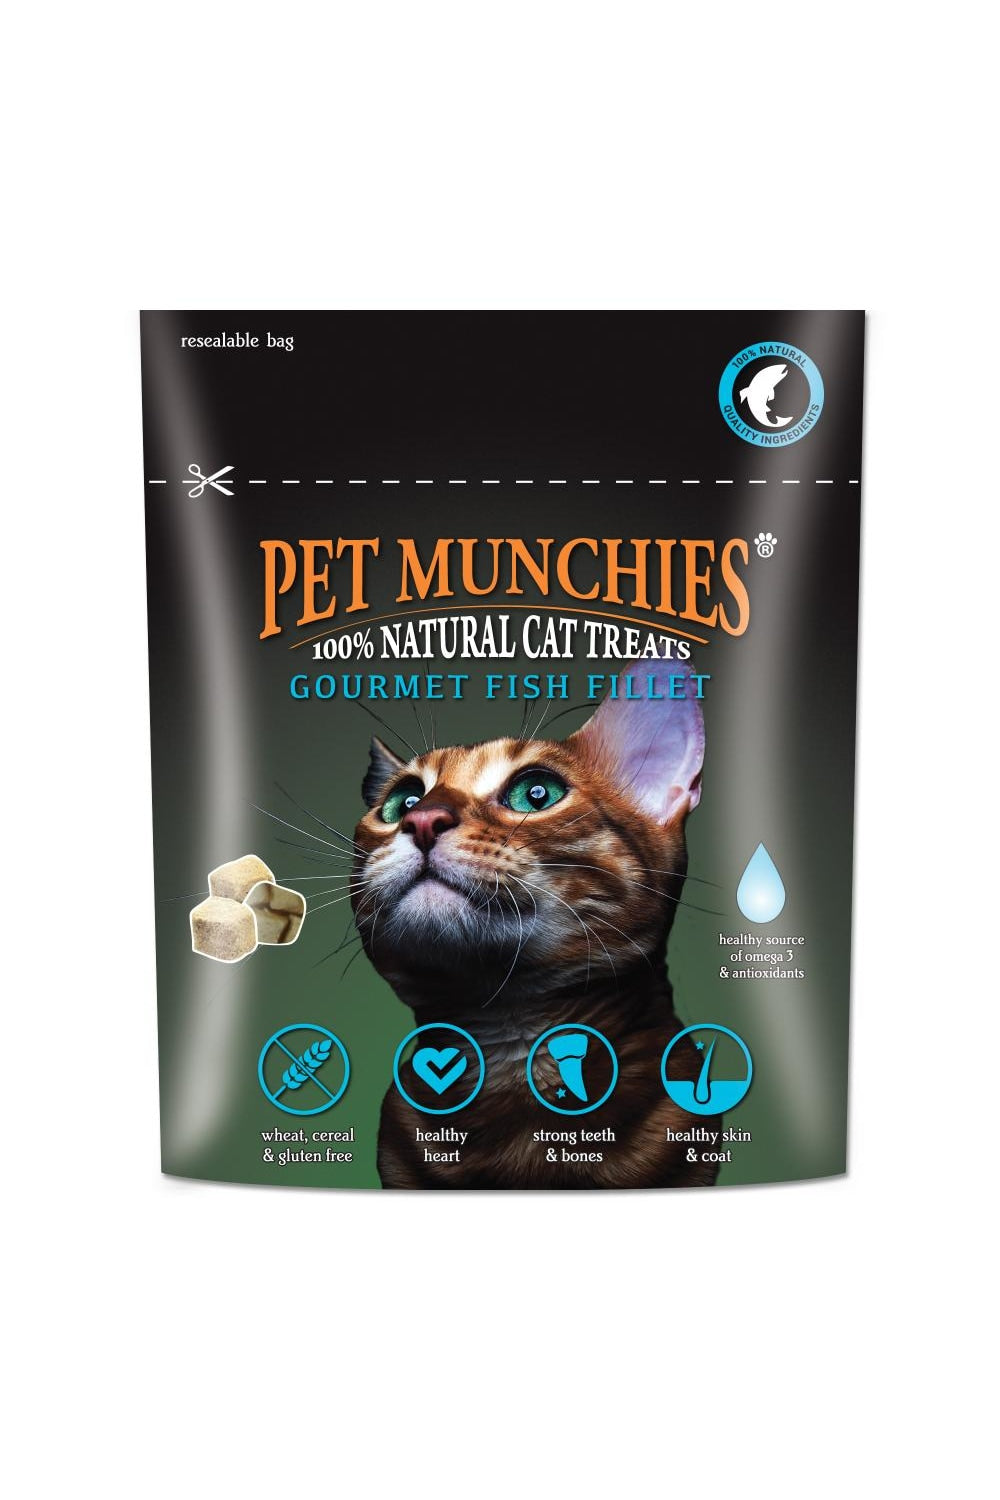 Pet Munchies Gourmet Fish Fillet Cat Treats (May Vary) (0.35oz)